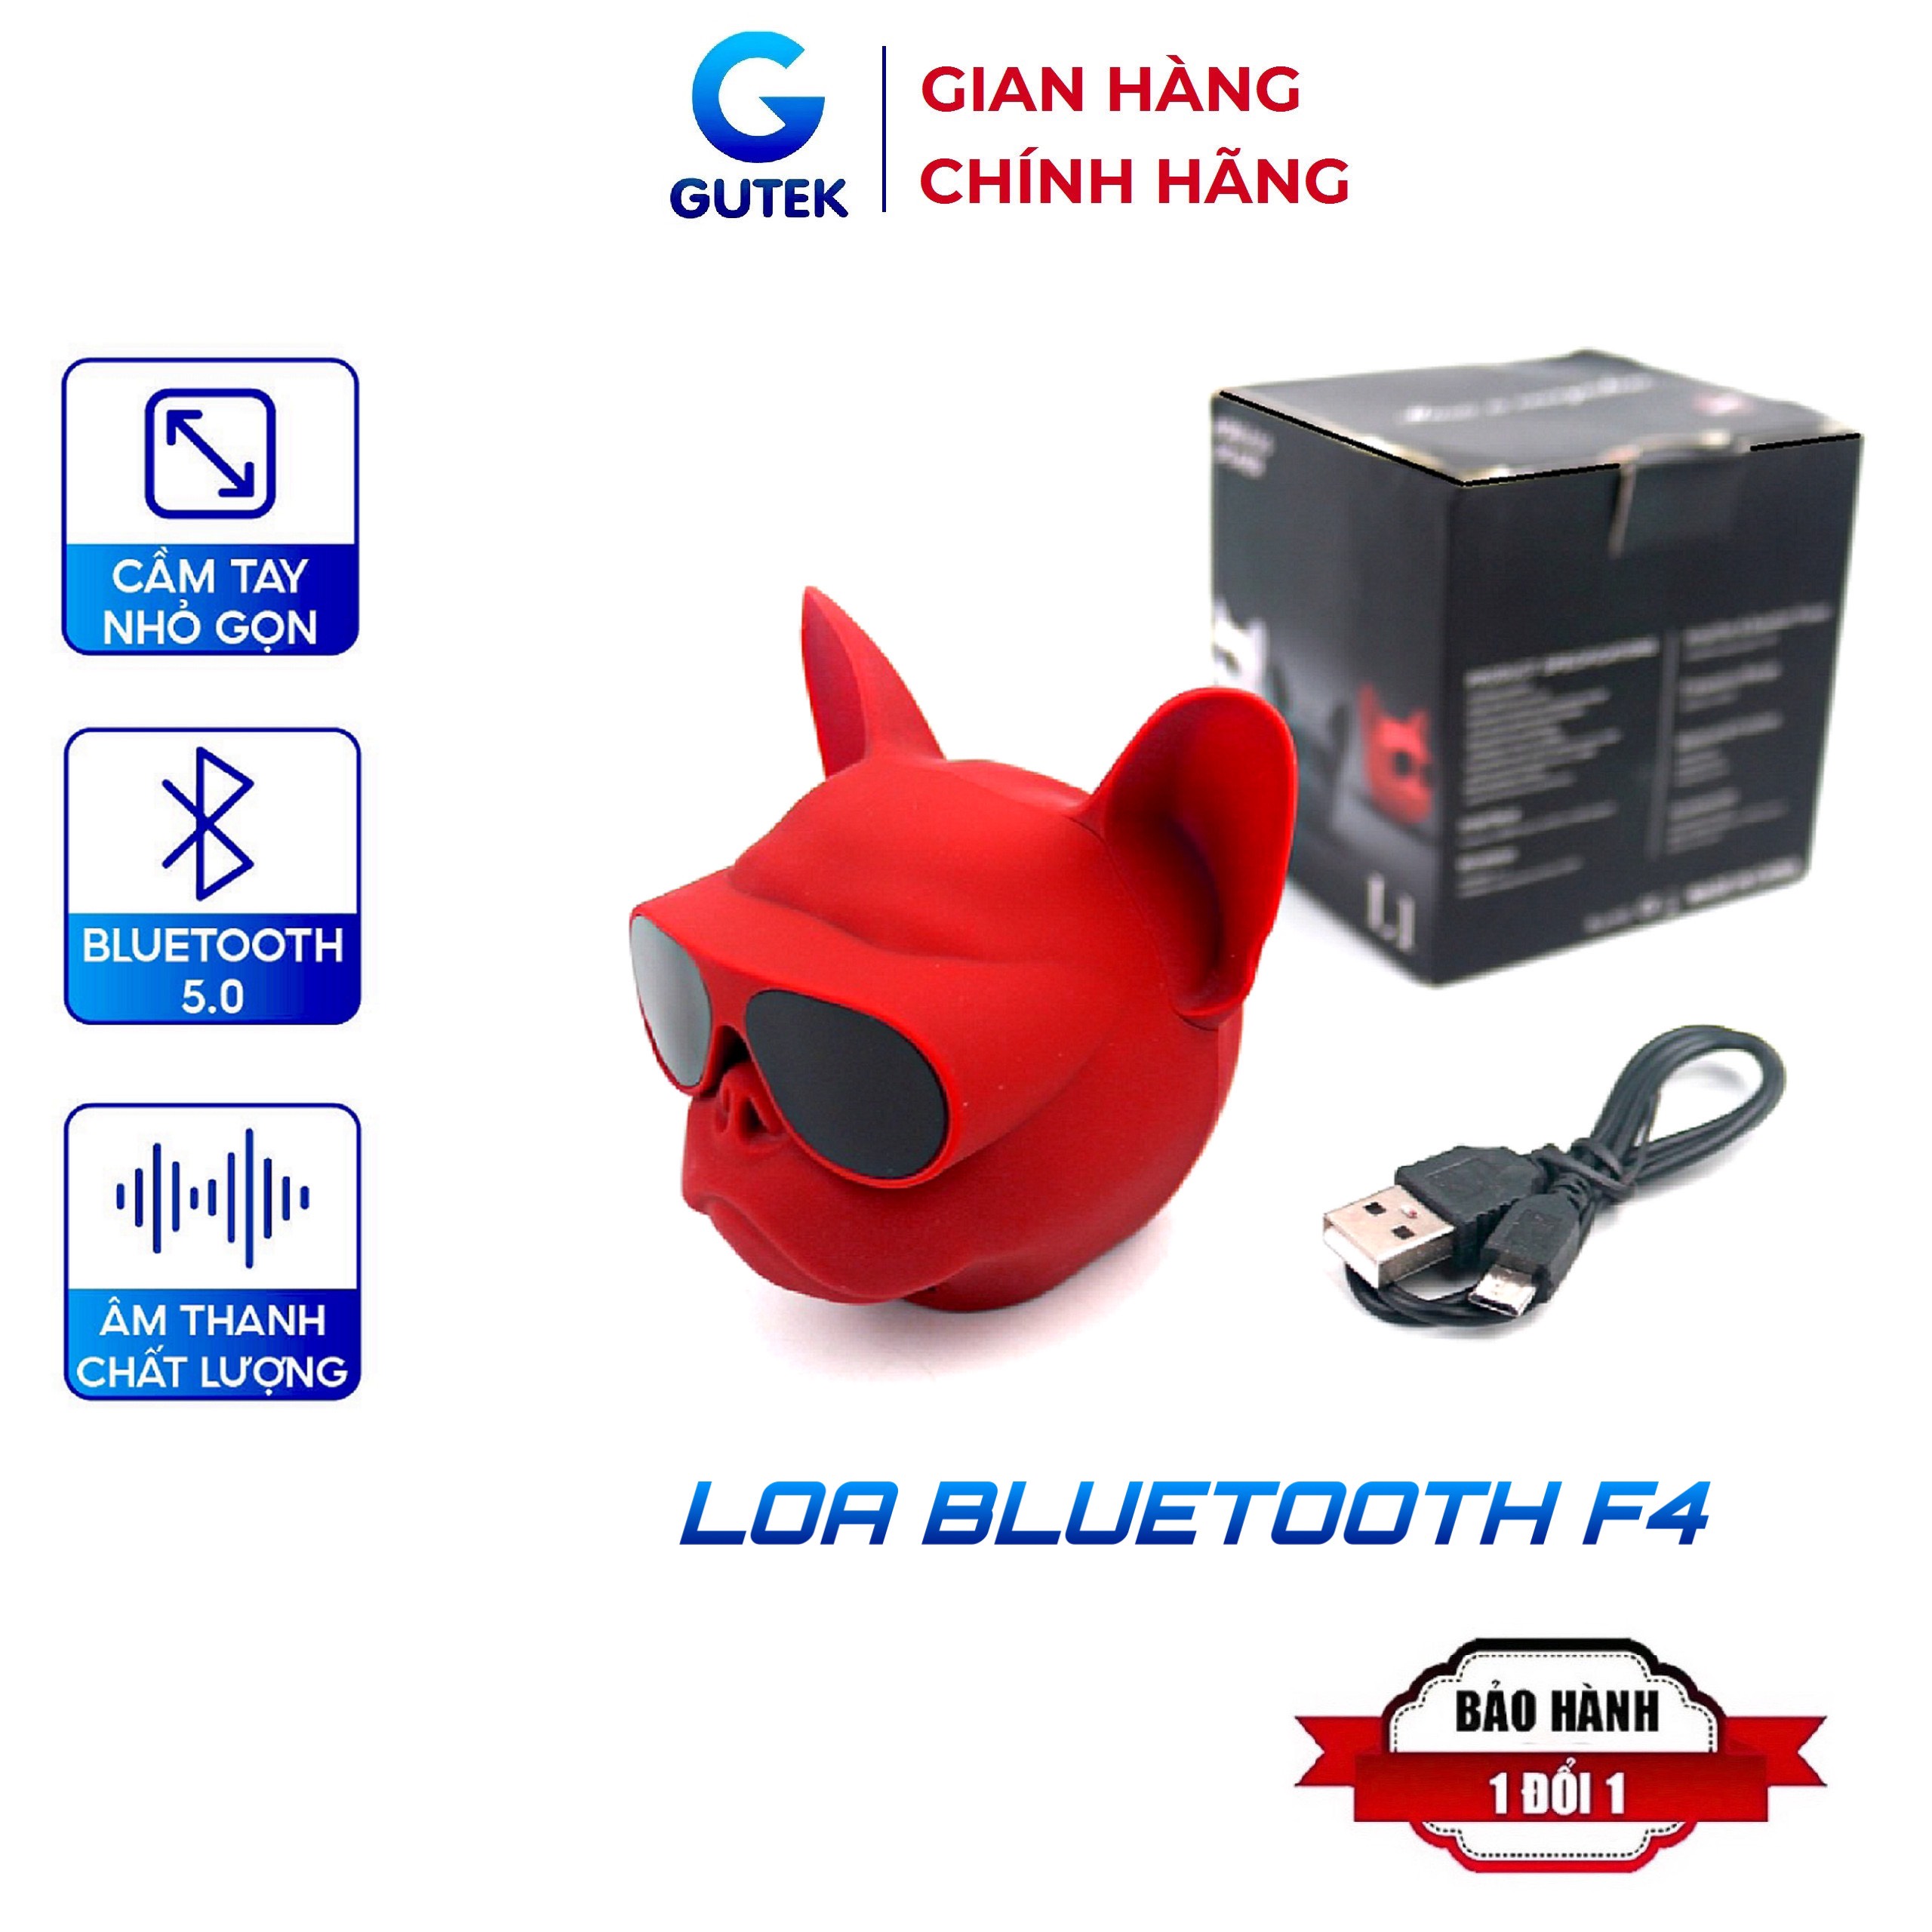 Loa Bluetooth Mini Thiết Kế Đầu Chó Bull Nghe Nhạc Cầm Tay Có Dây Đeo Kết Nối Không Dây Hỗ Trợ Thẻ Nhớ Gutek F4